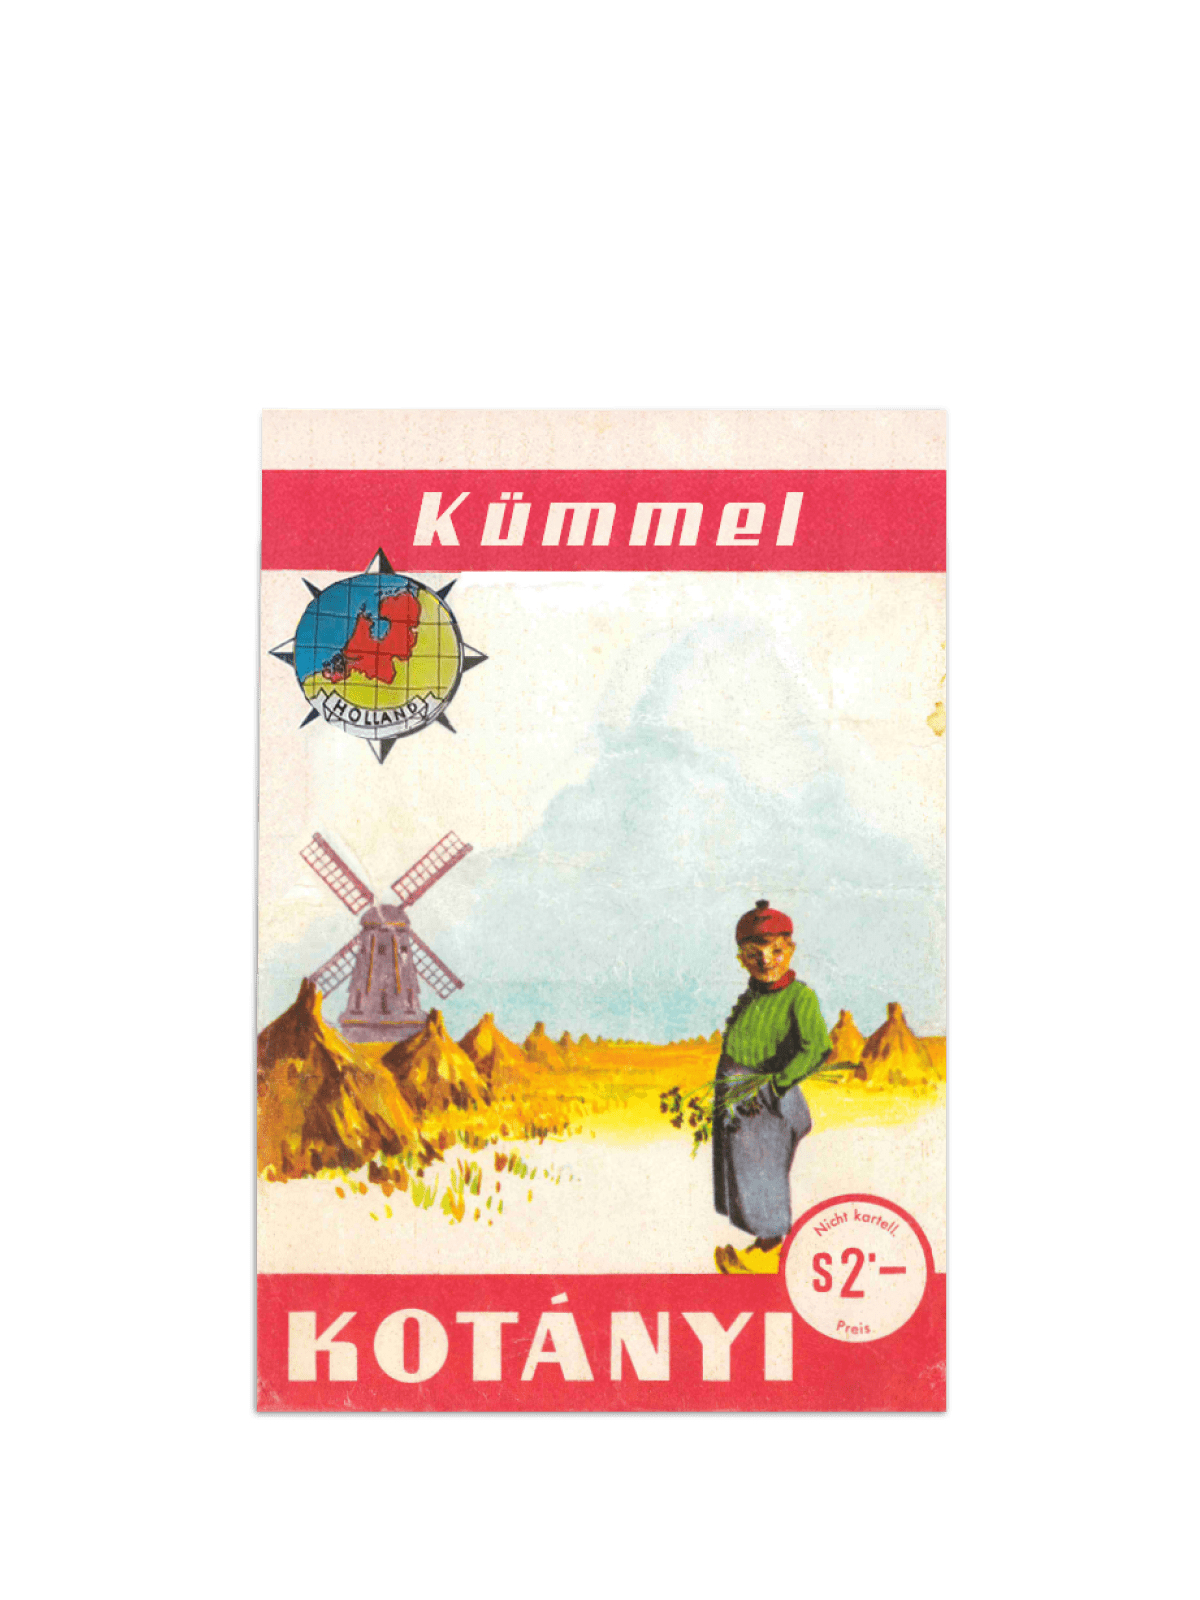 Kesica Kotányi kima iz 1961. godine.